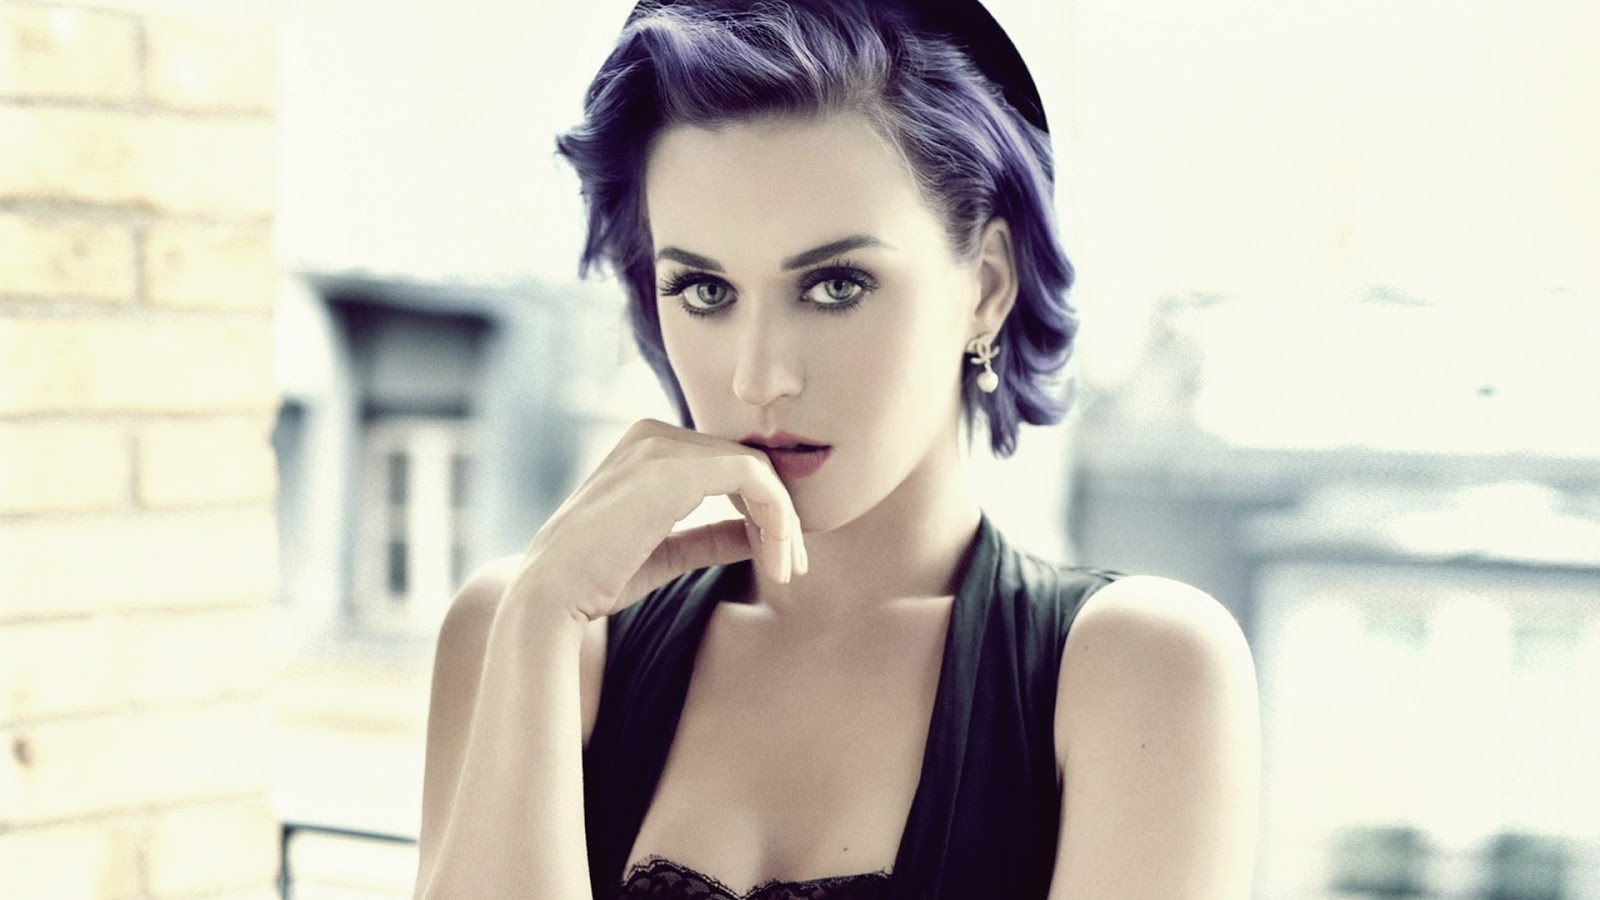 49+] Katy Perry 1080p Wallpaper - WallpaperSafari